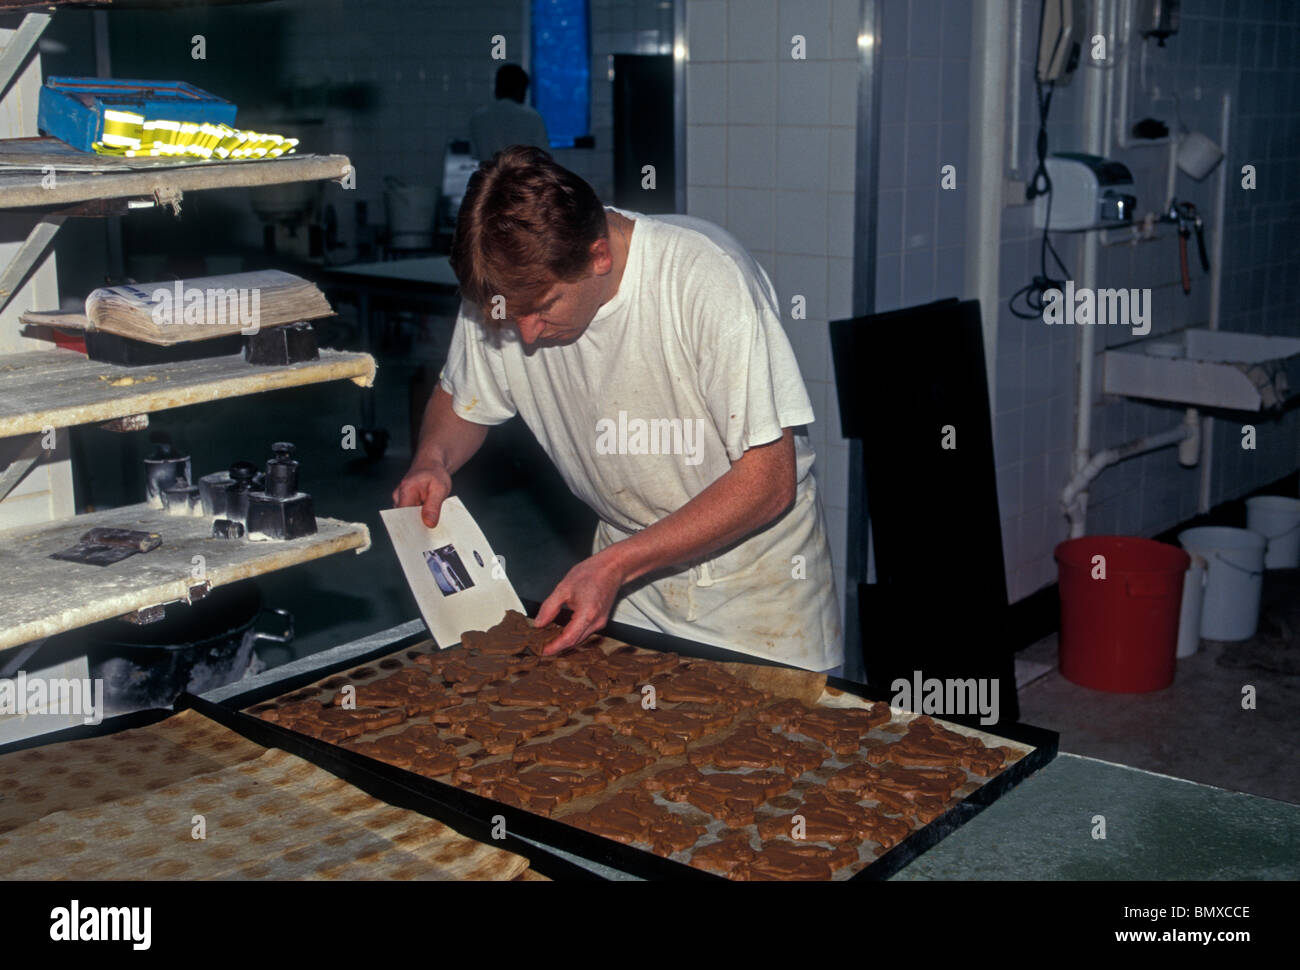 L'homme belge, employé, ouvrier, travaillant, Baker, la cuisson des biscuits, biscuits, maison j dandoy, biscuiterie, ville de Bruxelles, Bruxelles, Belgique Banque D'Images